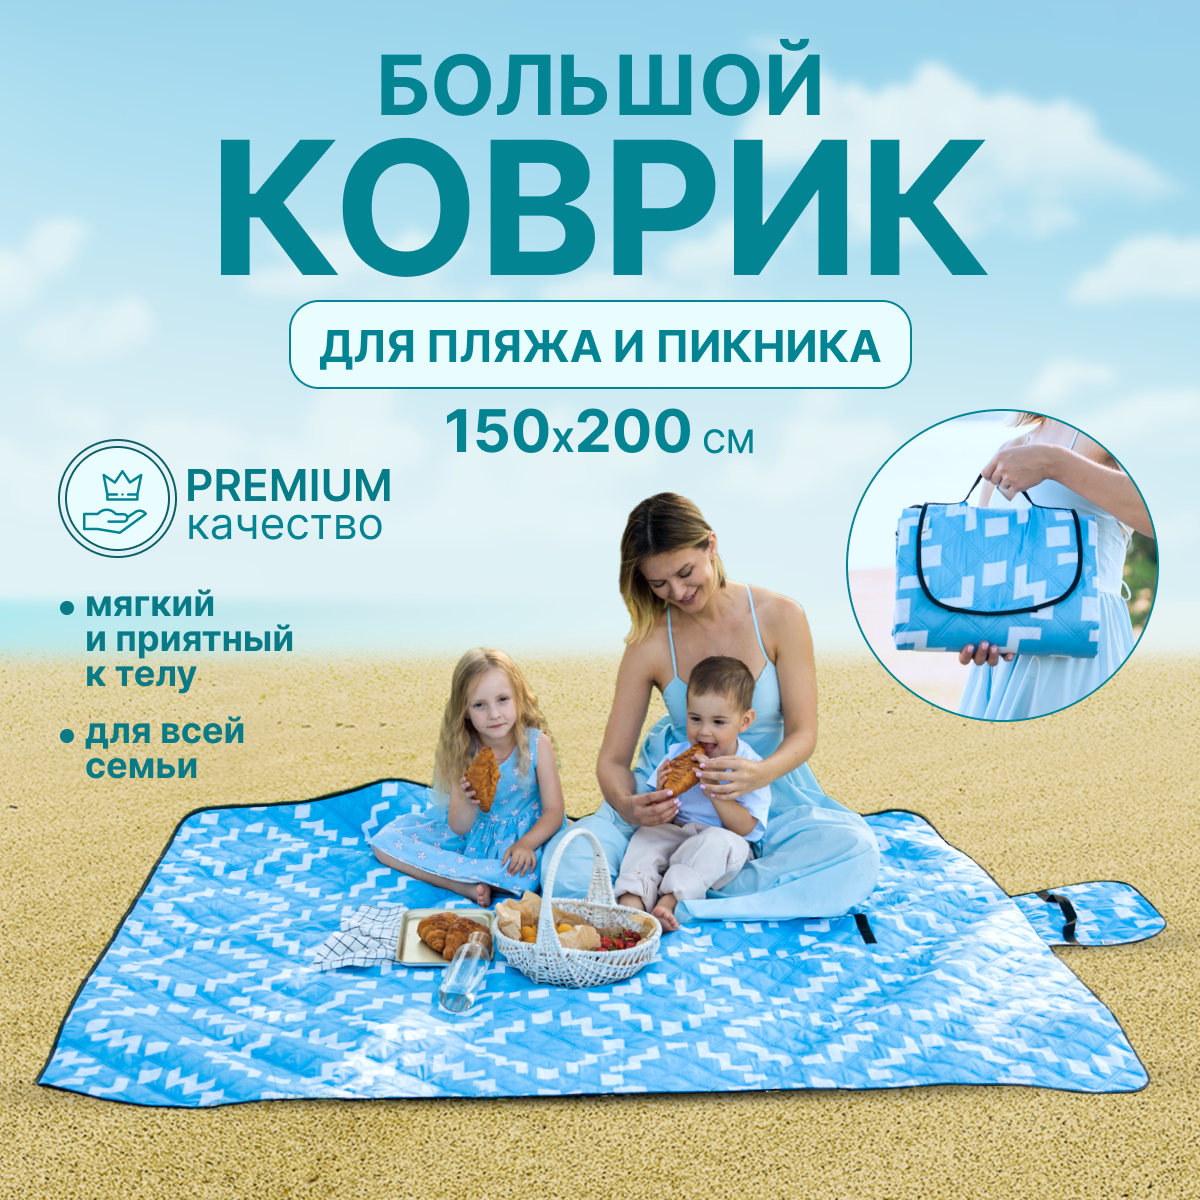 Коврик пляжный 200*150 см, коврик сумка, для пикника, для туризма